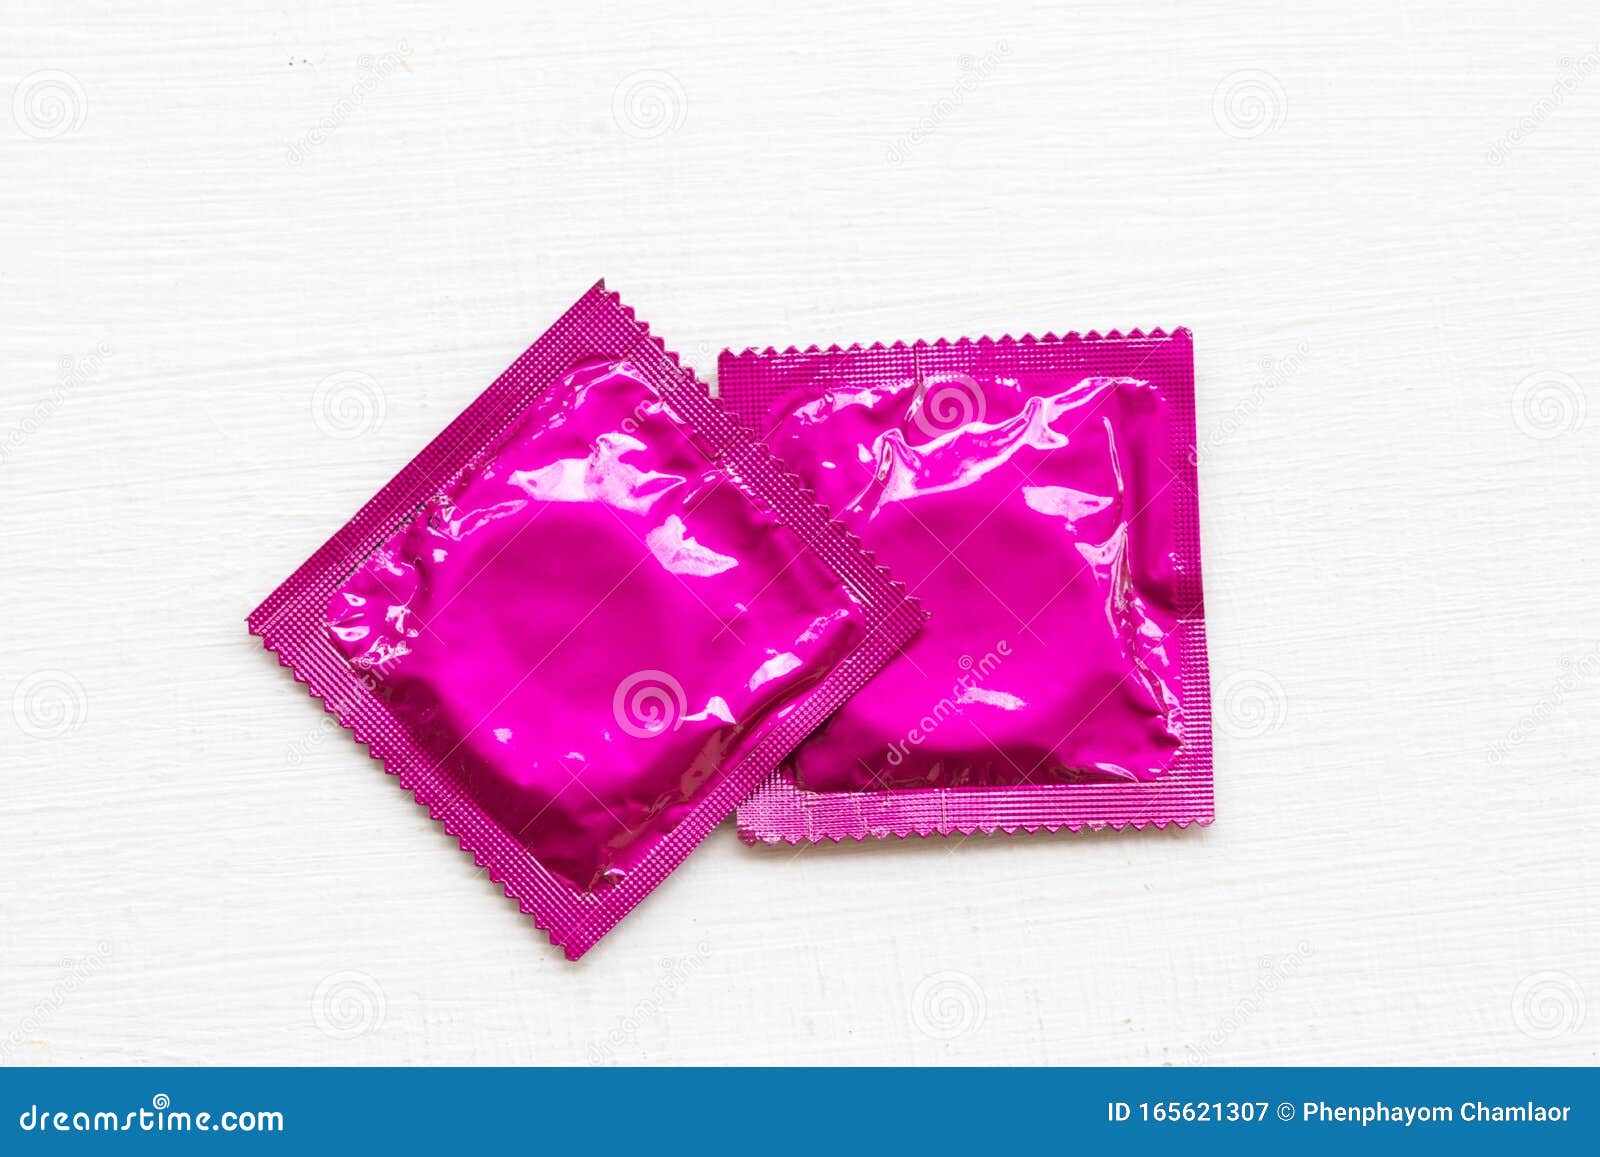 износ презерватива мужчины здоровье для секс защита концепция болезни концепция любви с безопасным на заднем плане белый Стоковое Изображение - изображение насчитывающей защитите, милочка: 165621307